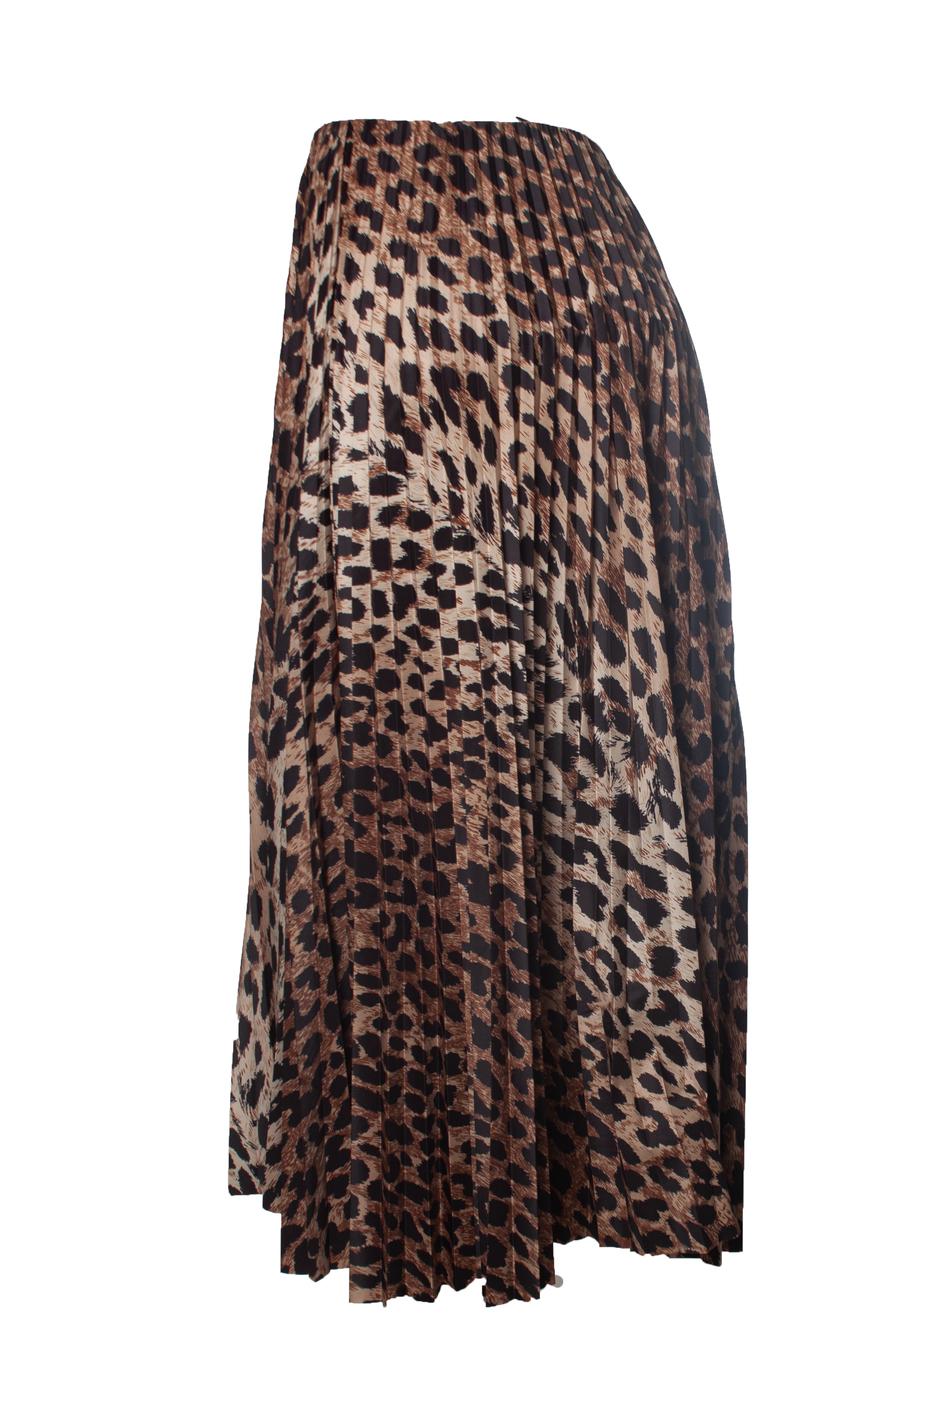 Balenciaga, Jupe midi plissée en soie imprimée léopard, taille haute, avec corset. L'article est en excellent état.

• ÉTAT : excellent état

• TAILLE : FR40 - M 

• MESURES : longueur 71 cm, taille 38 cm

• MATERIAL : 100% polyester 

• ENTRETIEN :